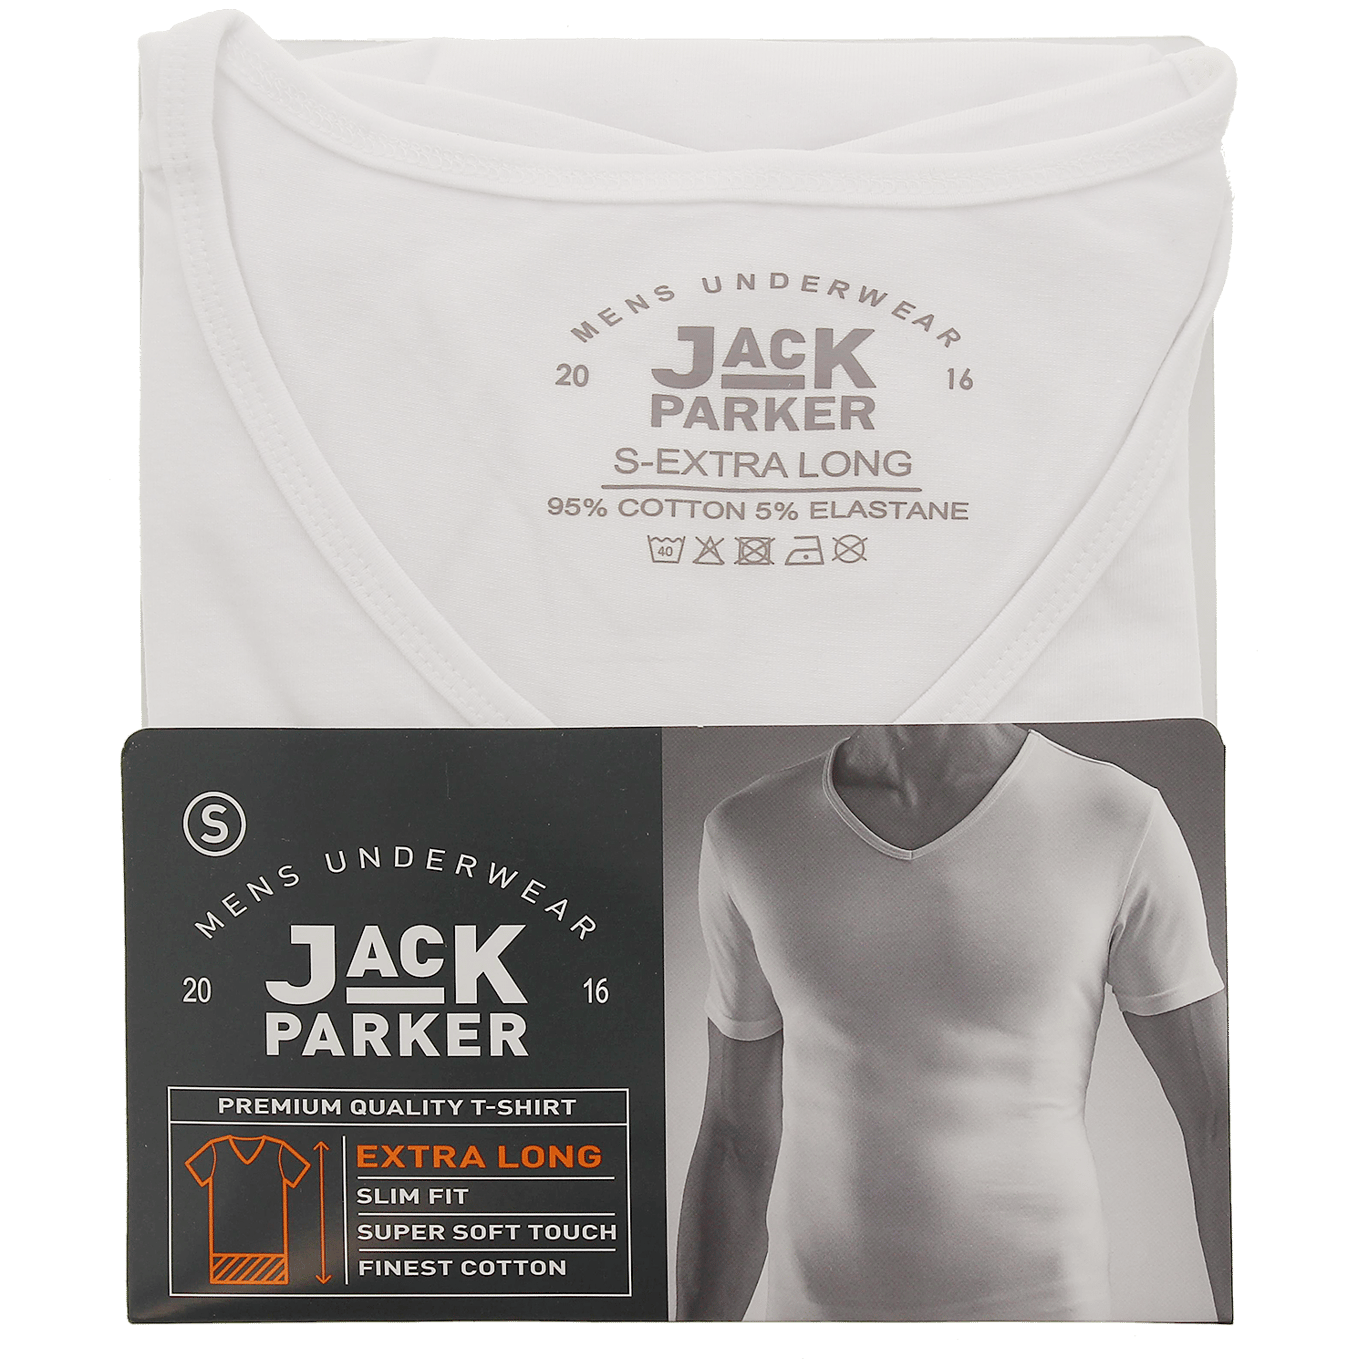 arm alliantie Spectaculair Jack Parker extra lang T-shirt | Action.com